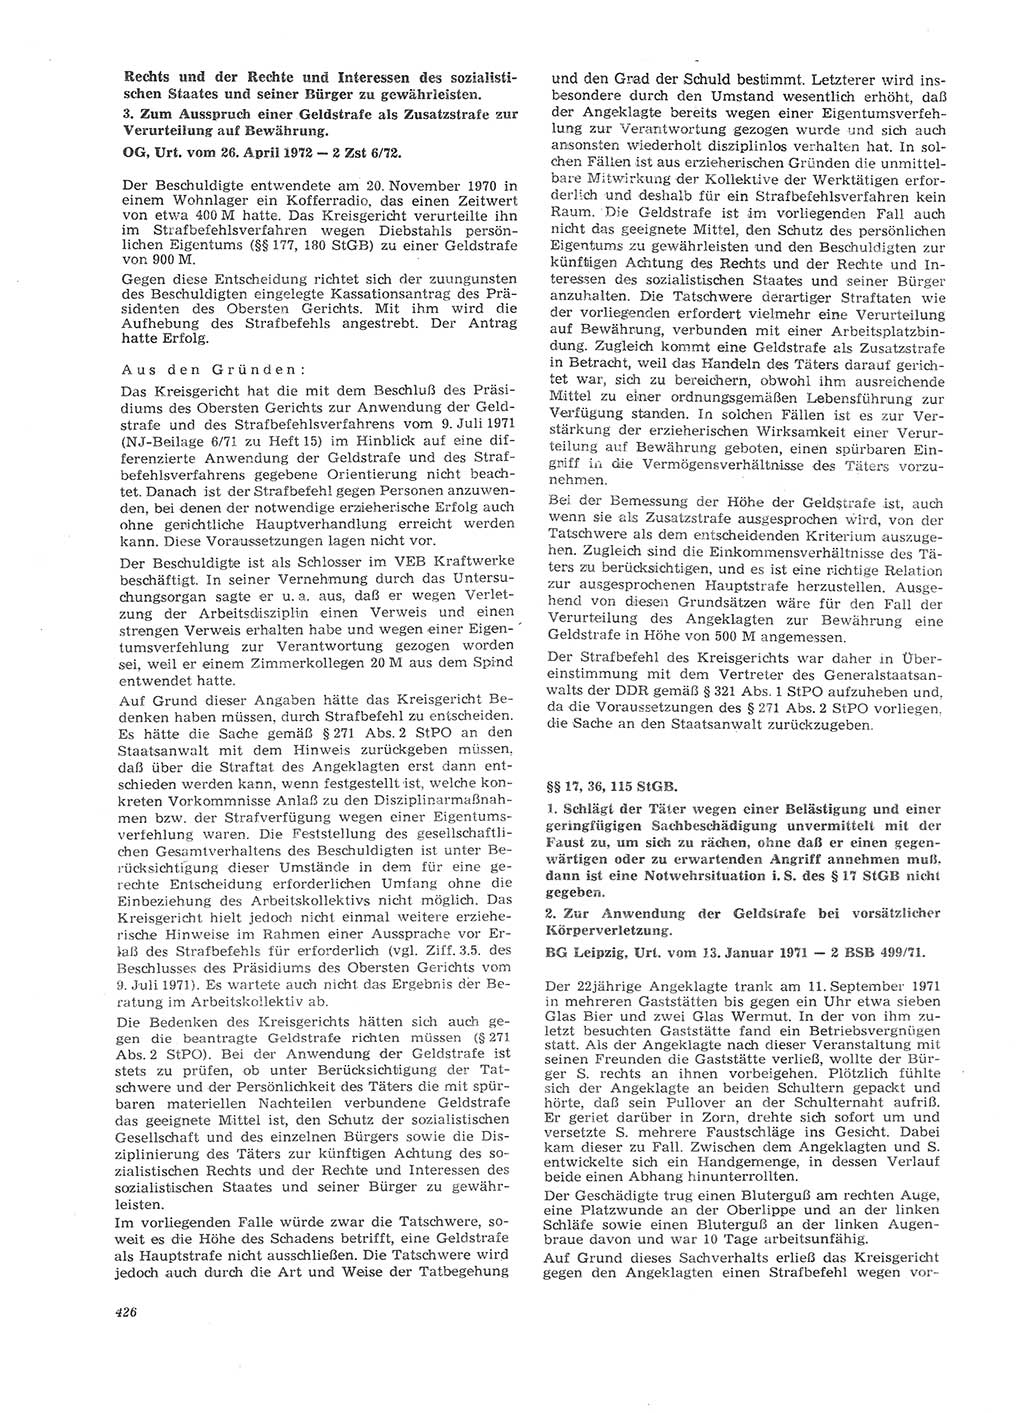 Neue Justiz (NJ), Zeitschrift für Recht und Rechtswissenschaft [Deutsche Demokratische Republik (DDR)], 26. Jahrgang 1972, Seite 426 (NJ DDR 1972, S. 426)